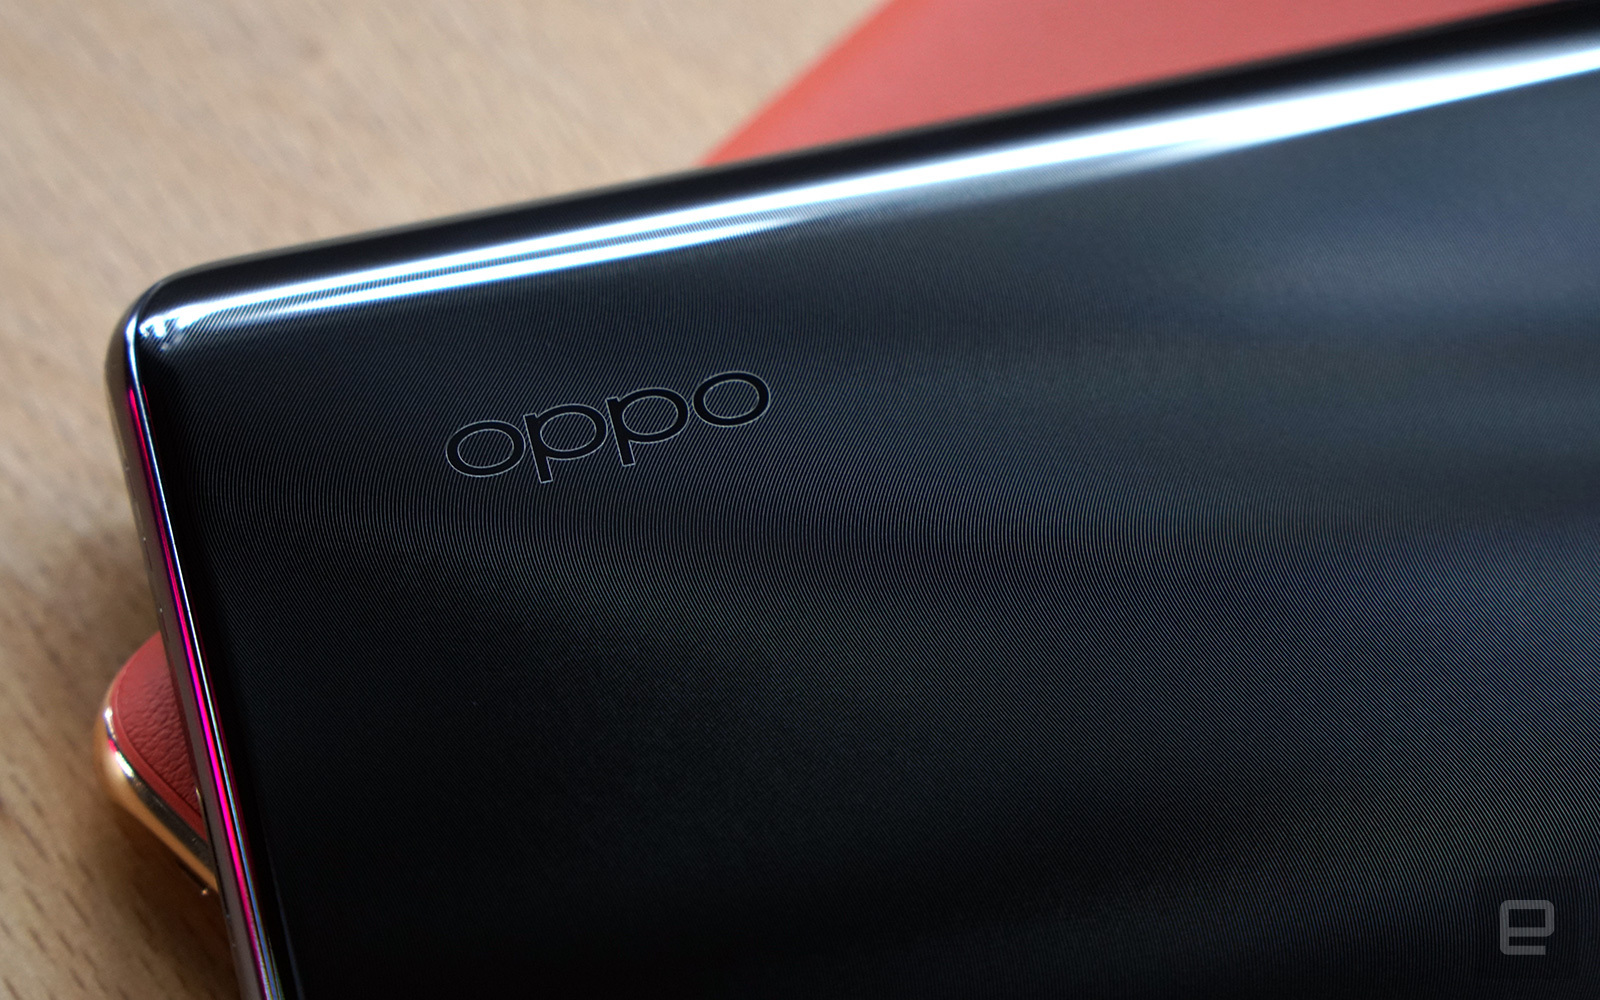 OPPO ra mắt Find X2 Pro với cấu hình khủng, màn hình 1440p 120Hz và camera tiềm vọng